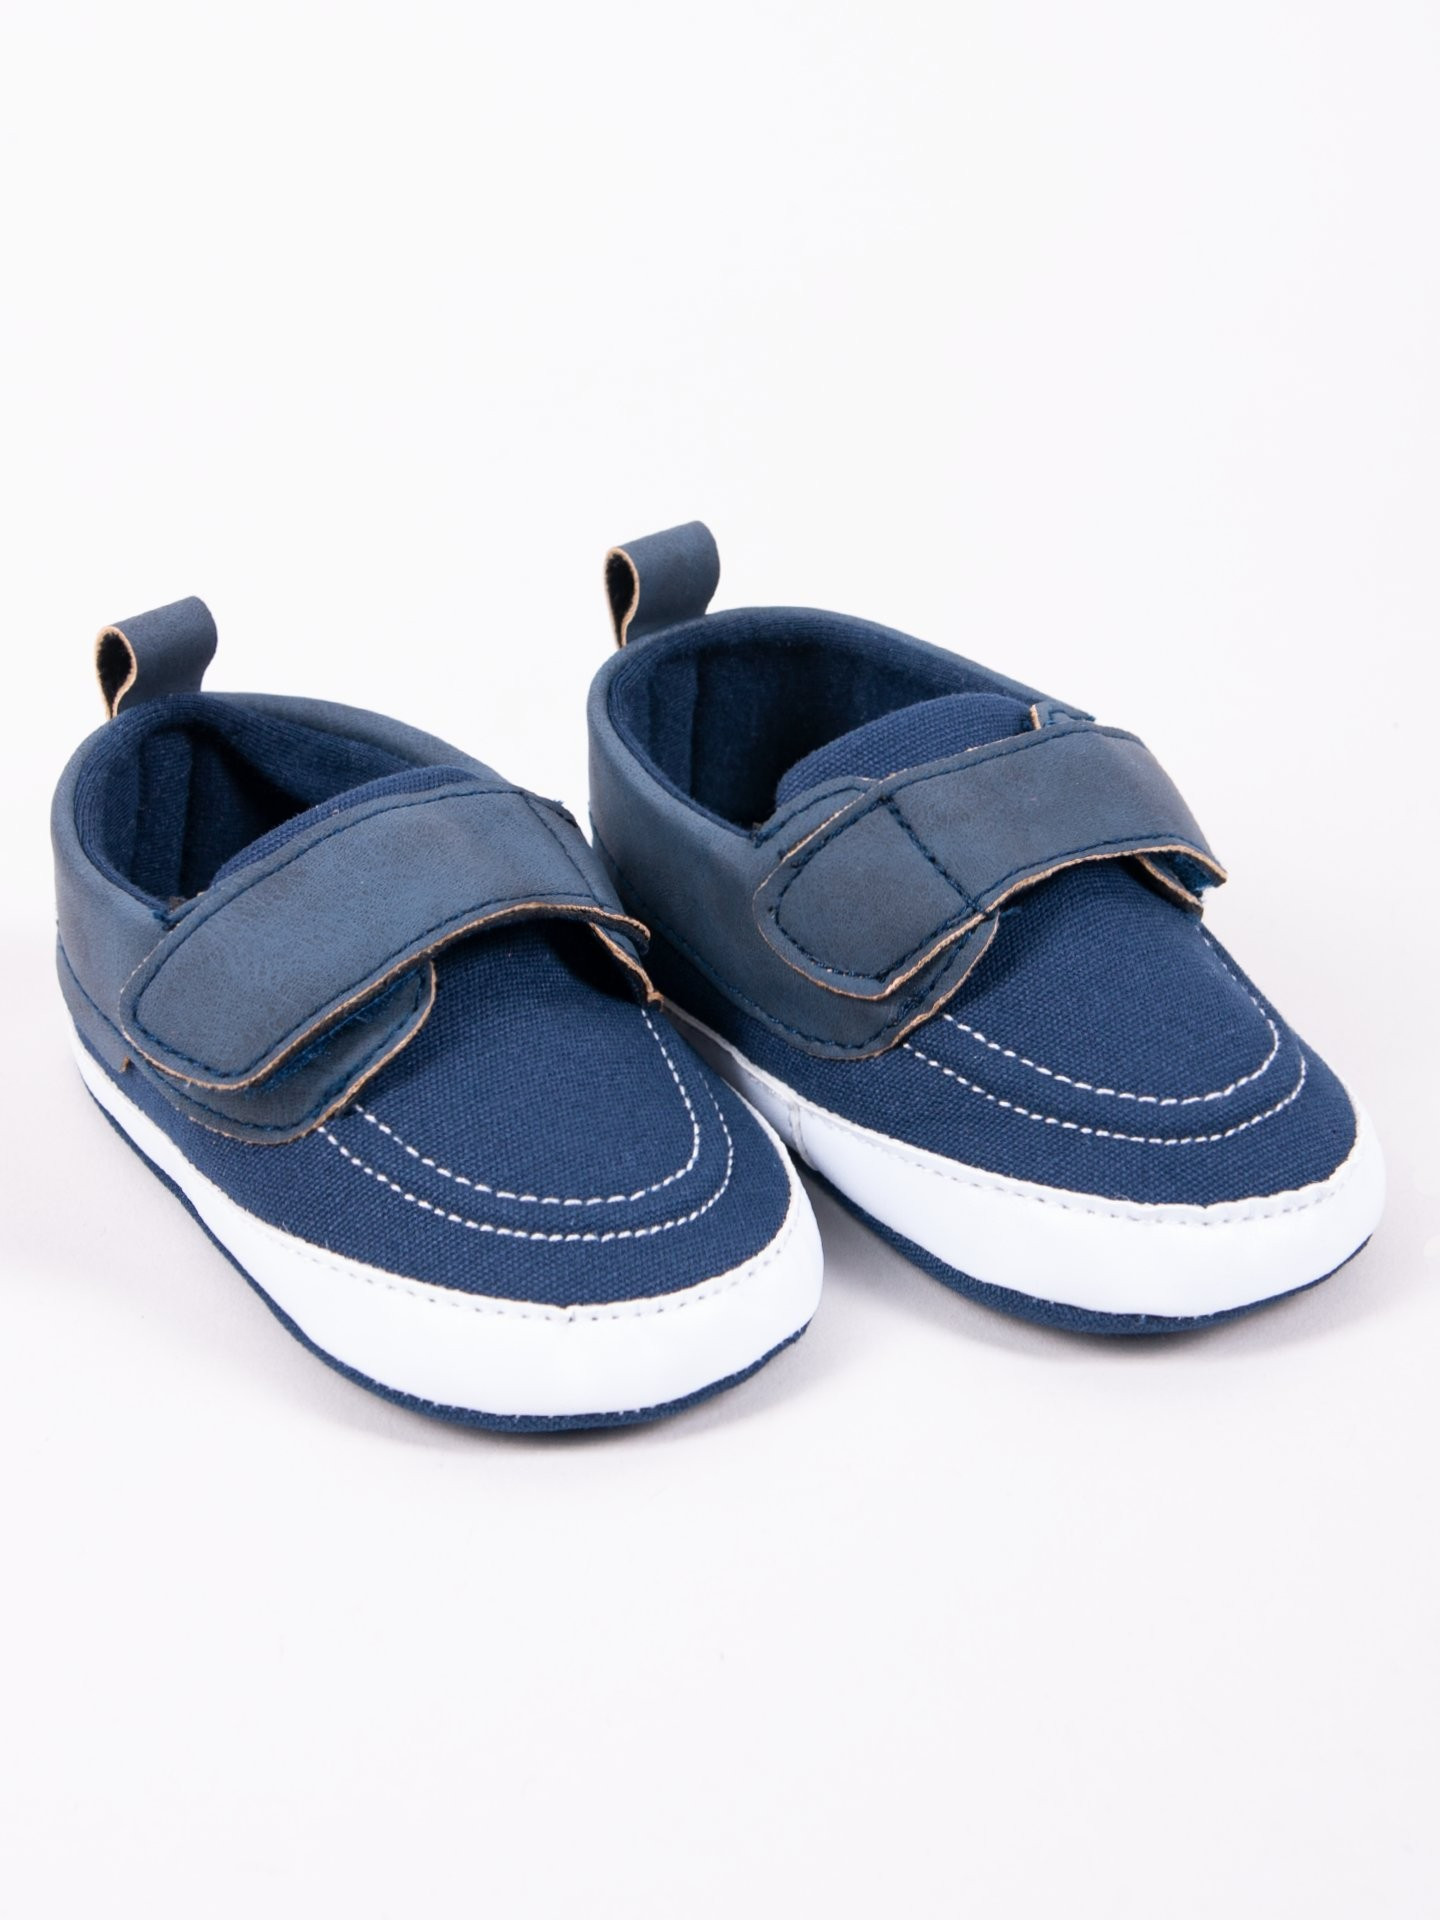 Yoclub Dětské chlapecké boty OBO-0178C-1900 Navy Blue 3-9 měsíců